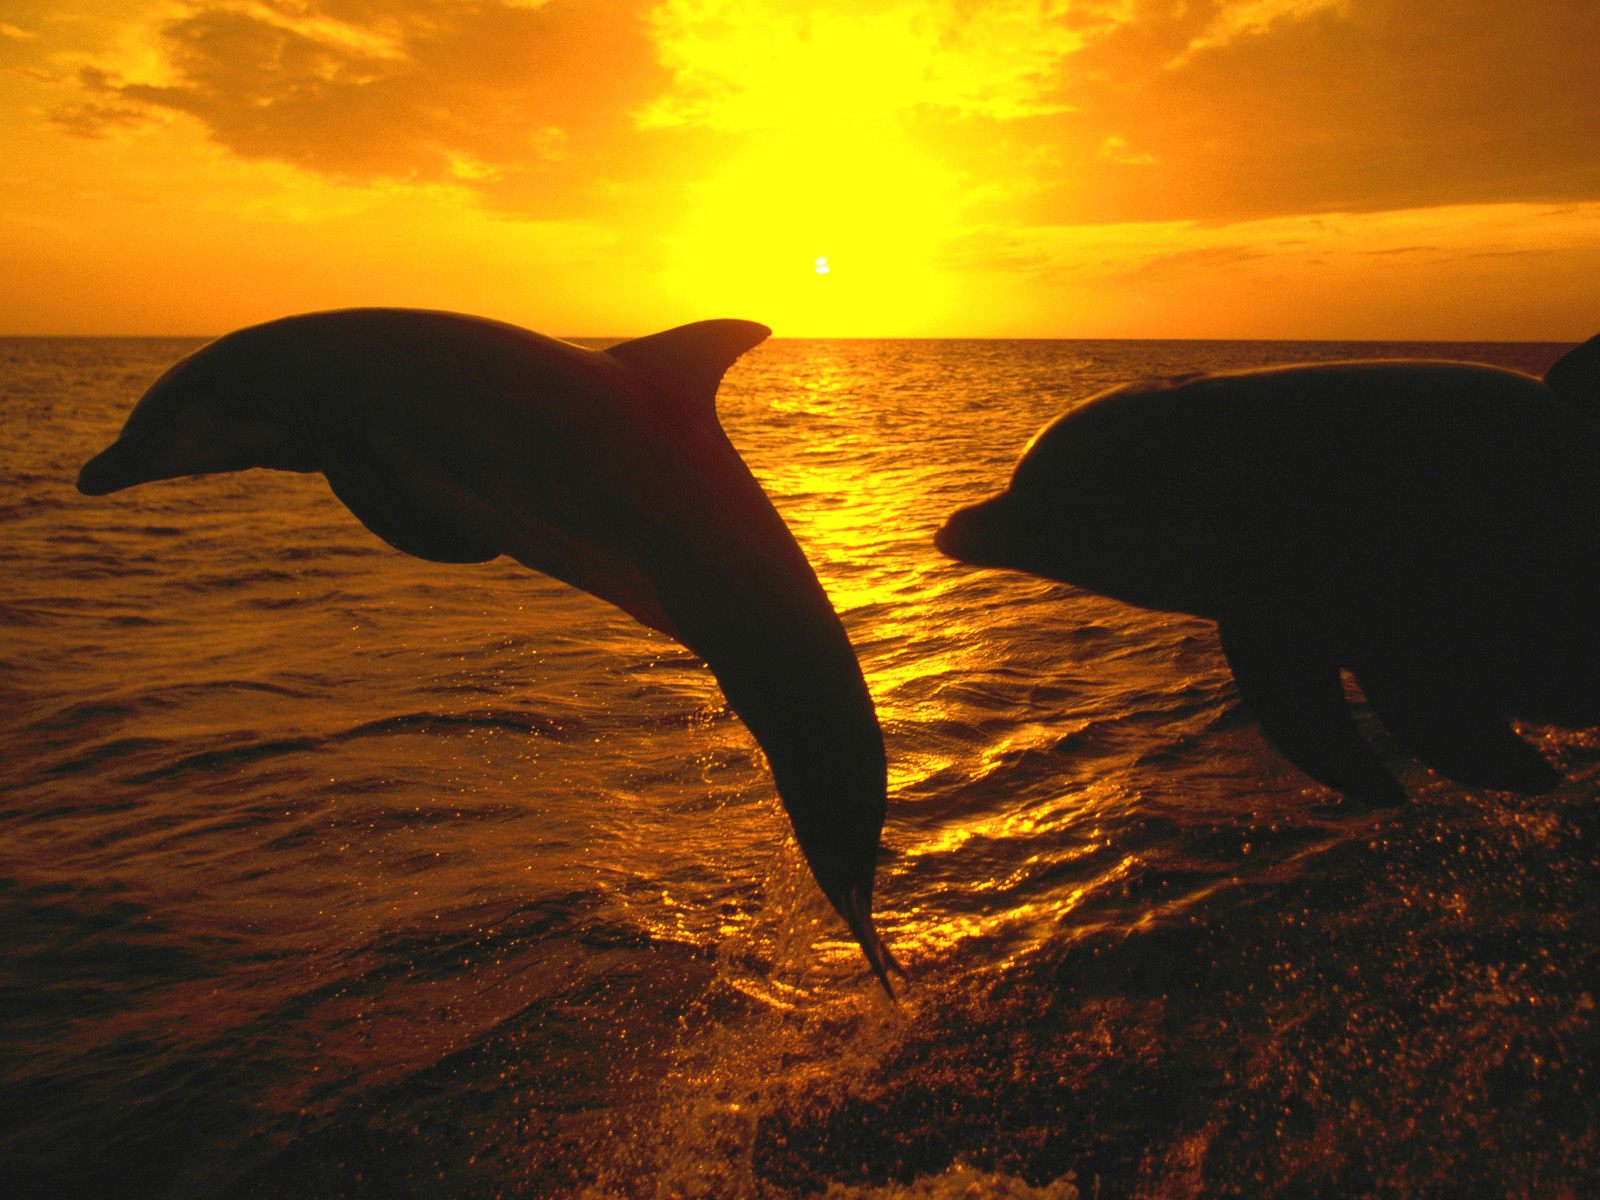 прыгающие дельфины, море, закат, дельфин над водой, Jumping dolphins, sea, sunset, dolphin above water